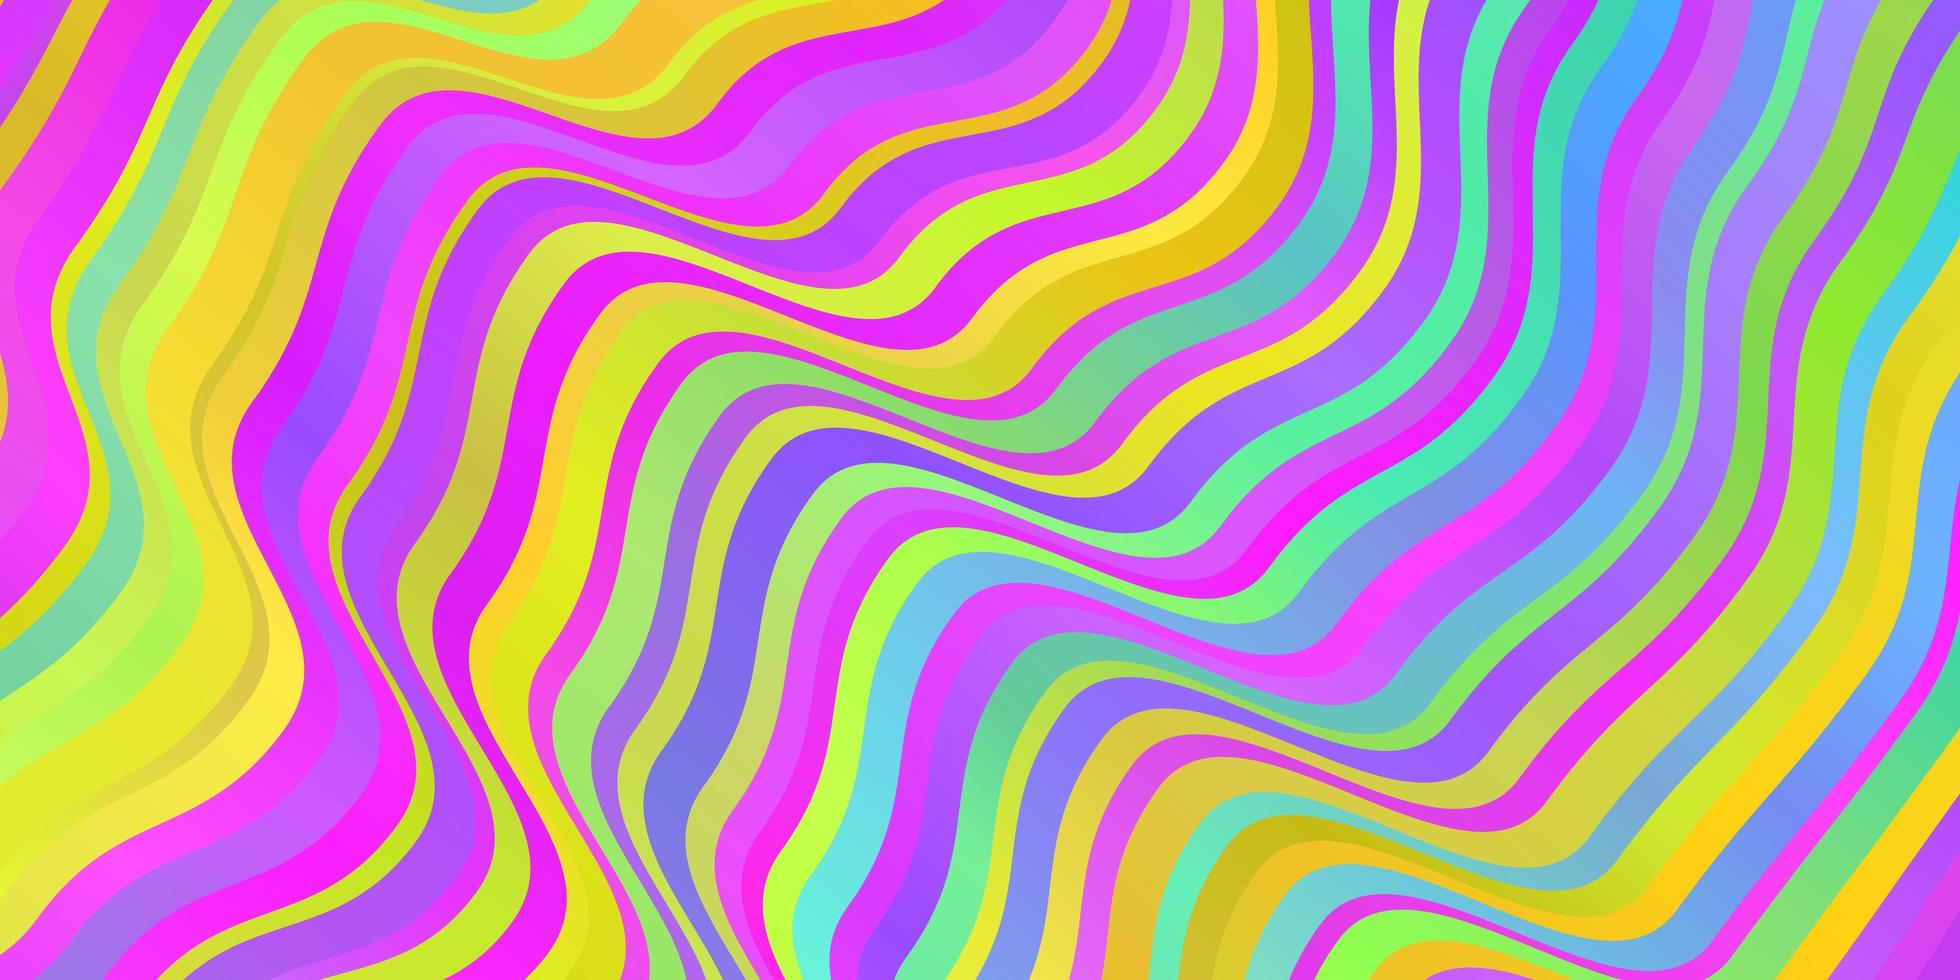 ljus flerfärgat vektor mönster med böjda linjer.